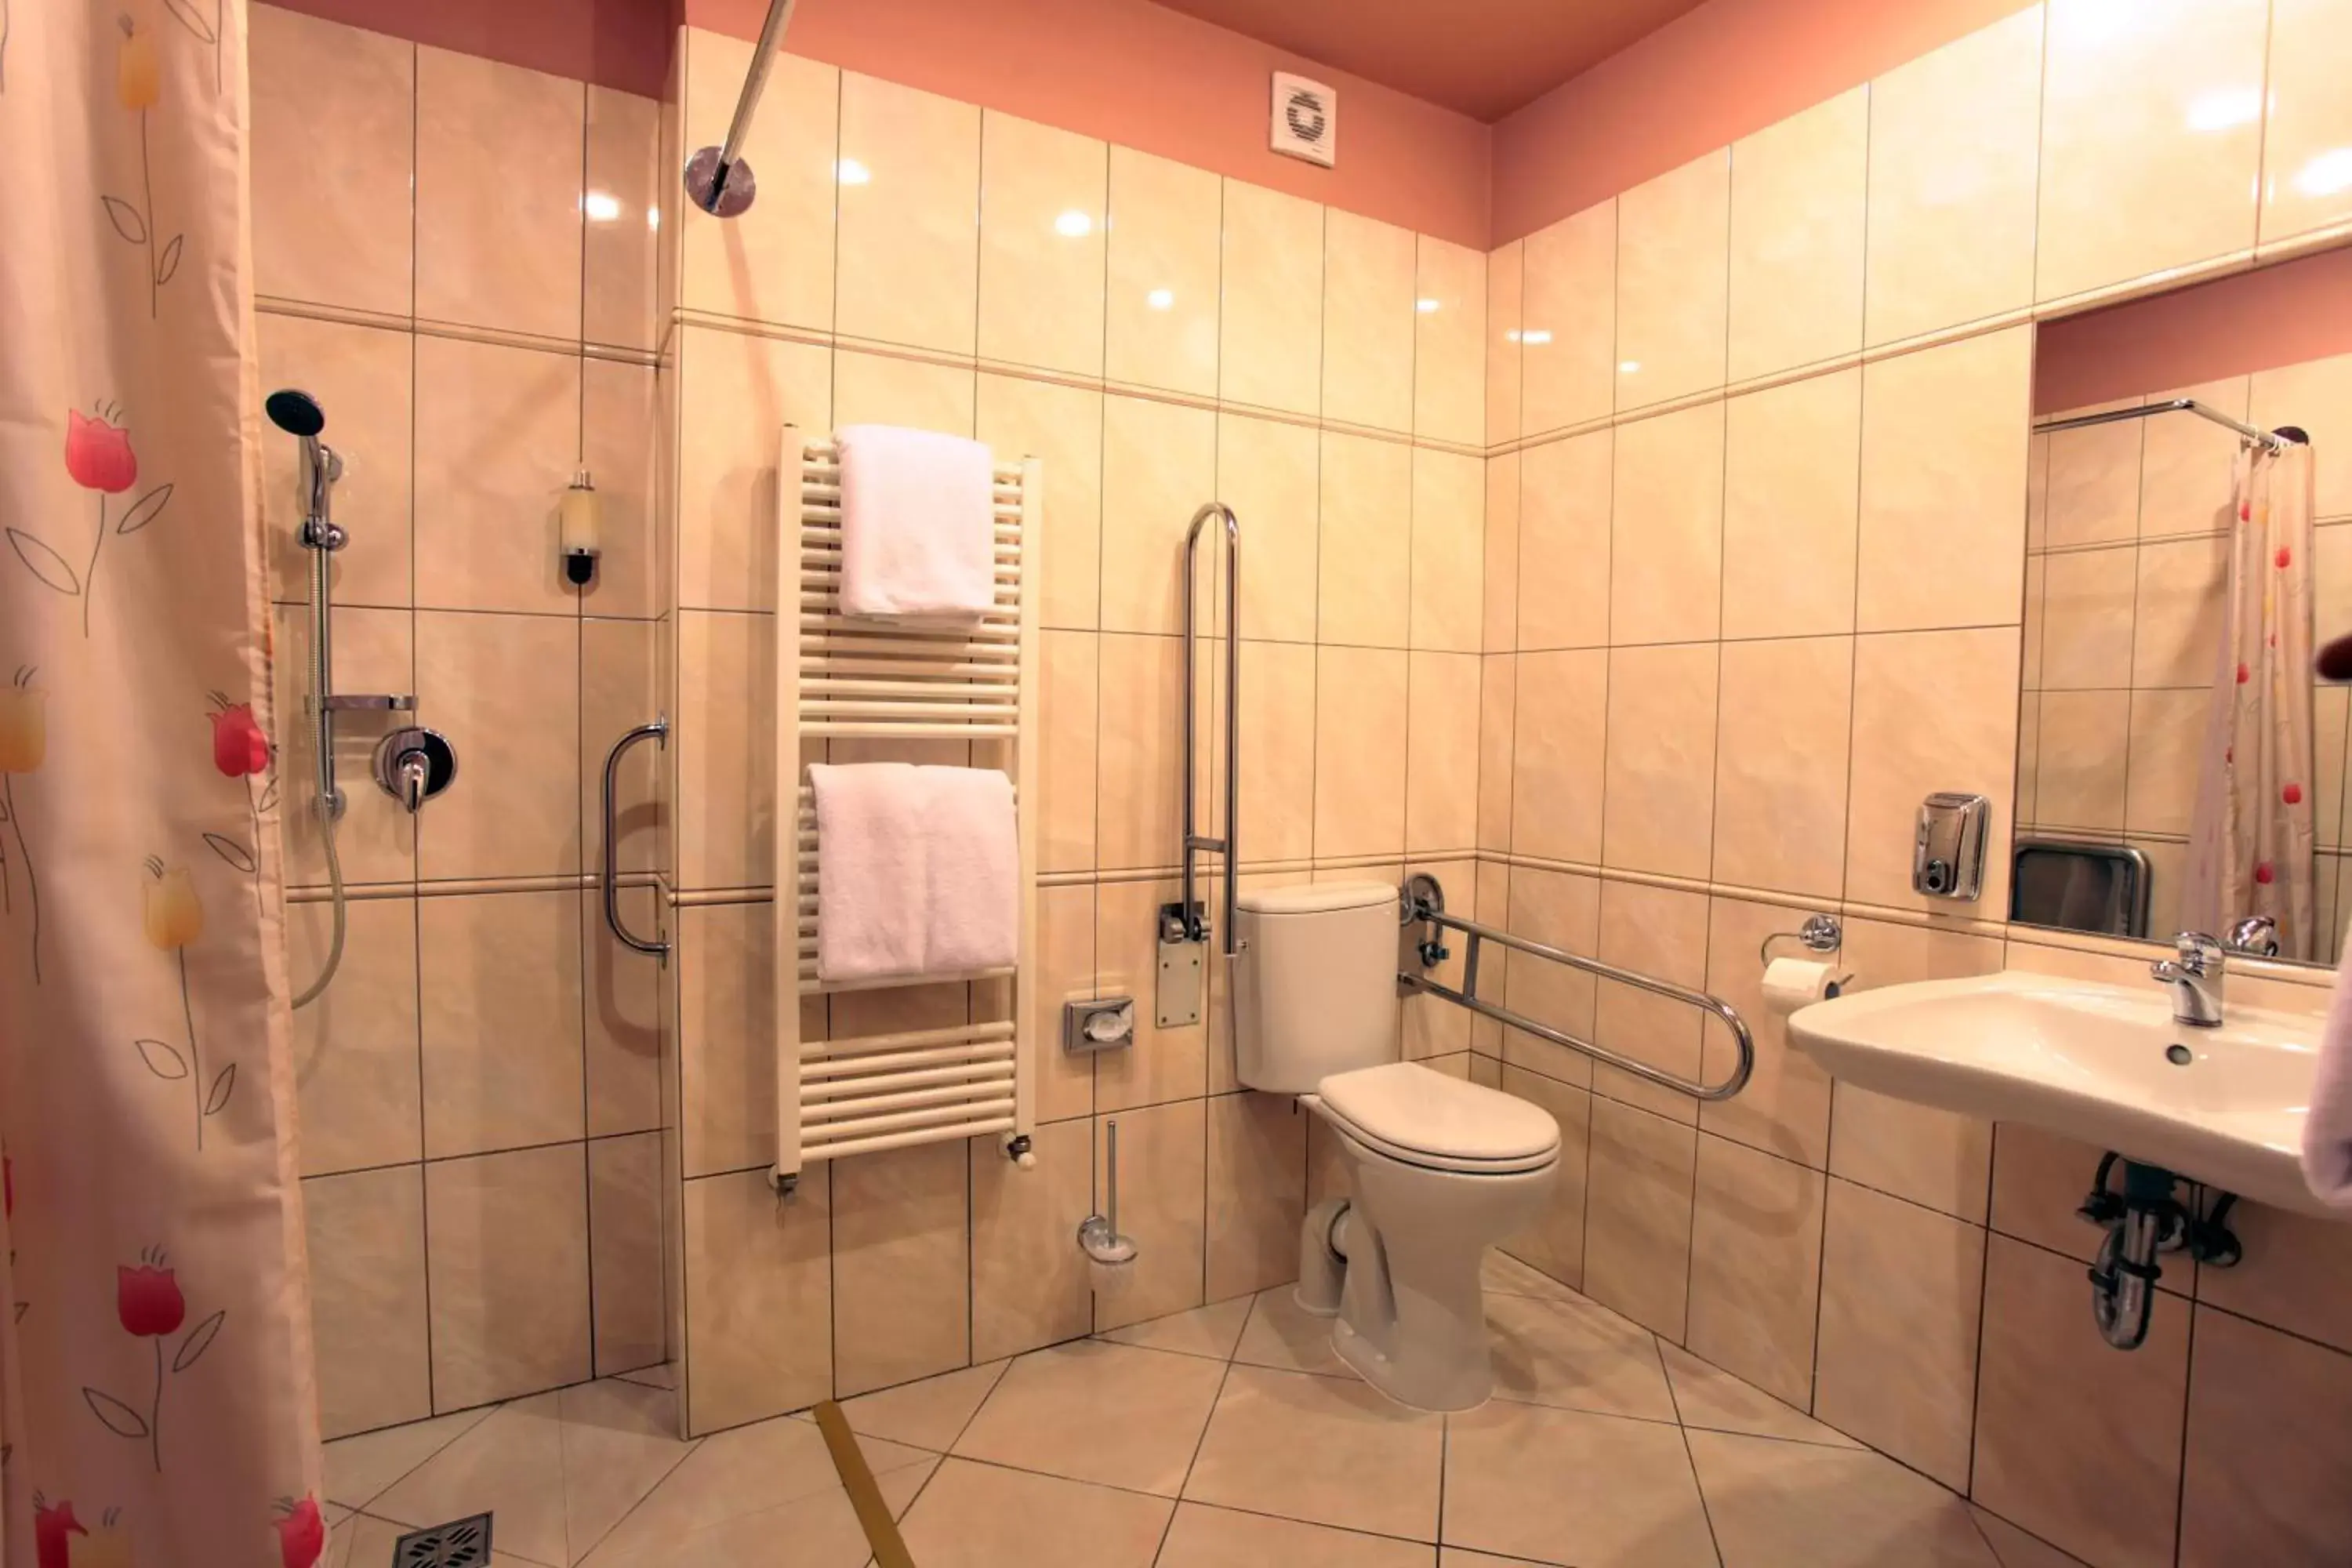 Area and facilities, Bathroom in Atlantic Hotel